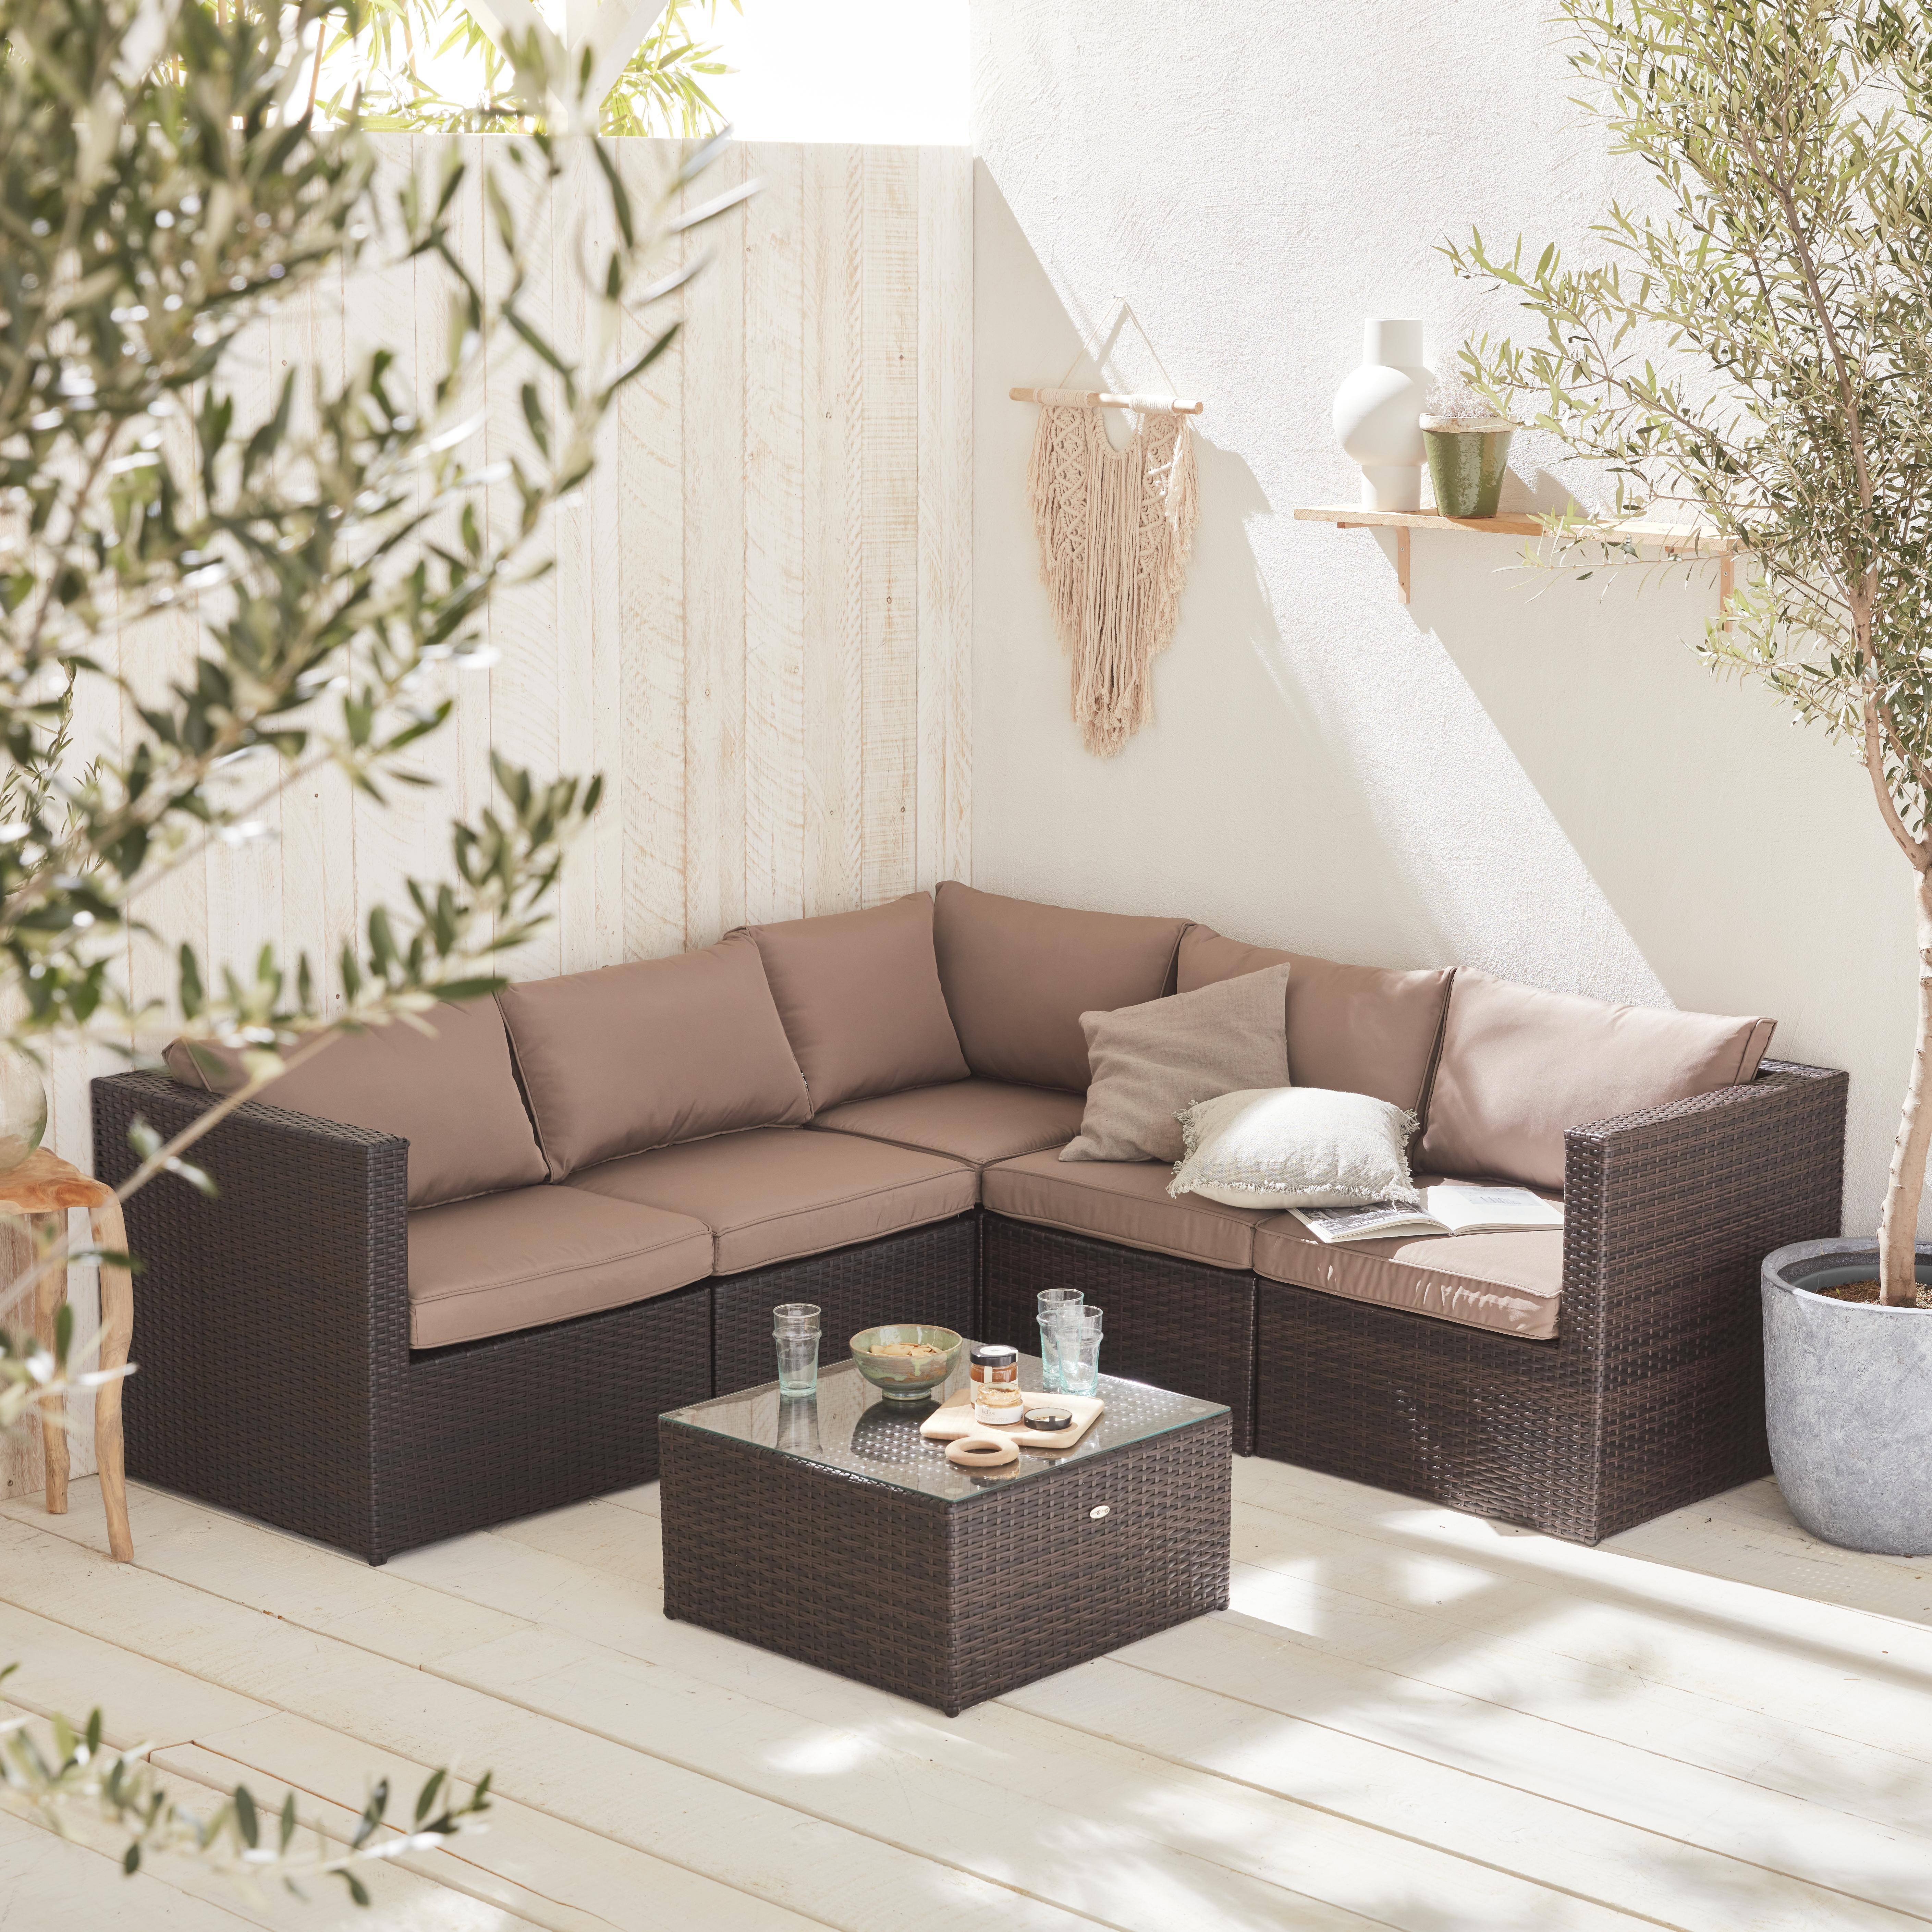 Muebles de jardín, conjunto sofá de exterior, Marrón marrón, 5 plazas - Siena Photo1